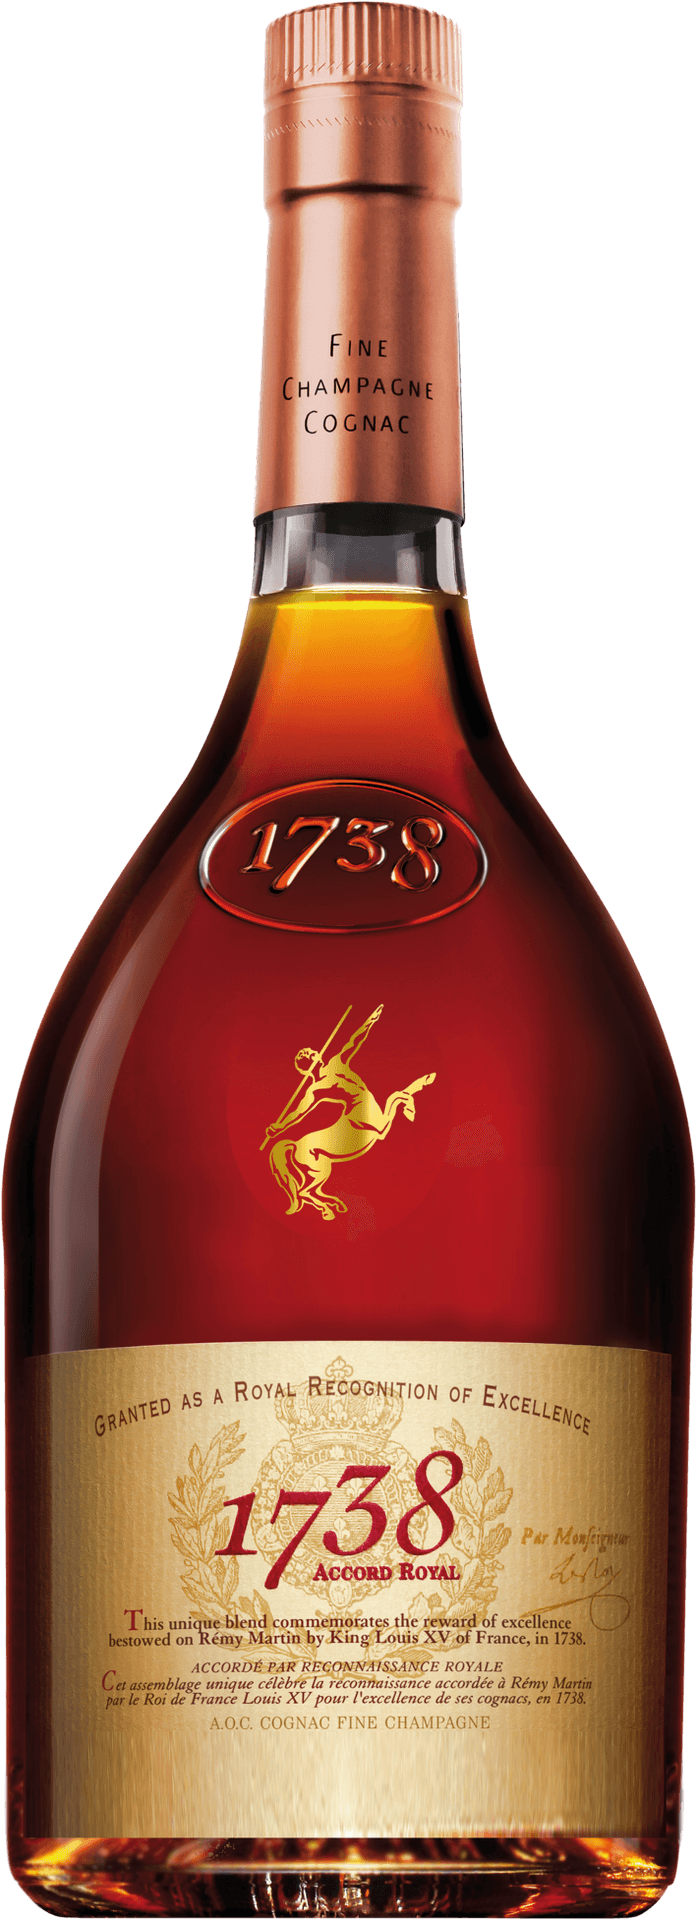 Fine Champagne Cognac Bottle1738 PNG